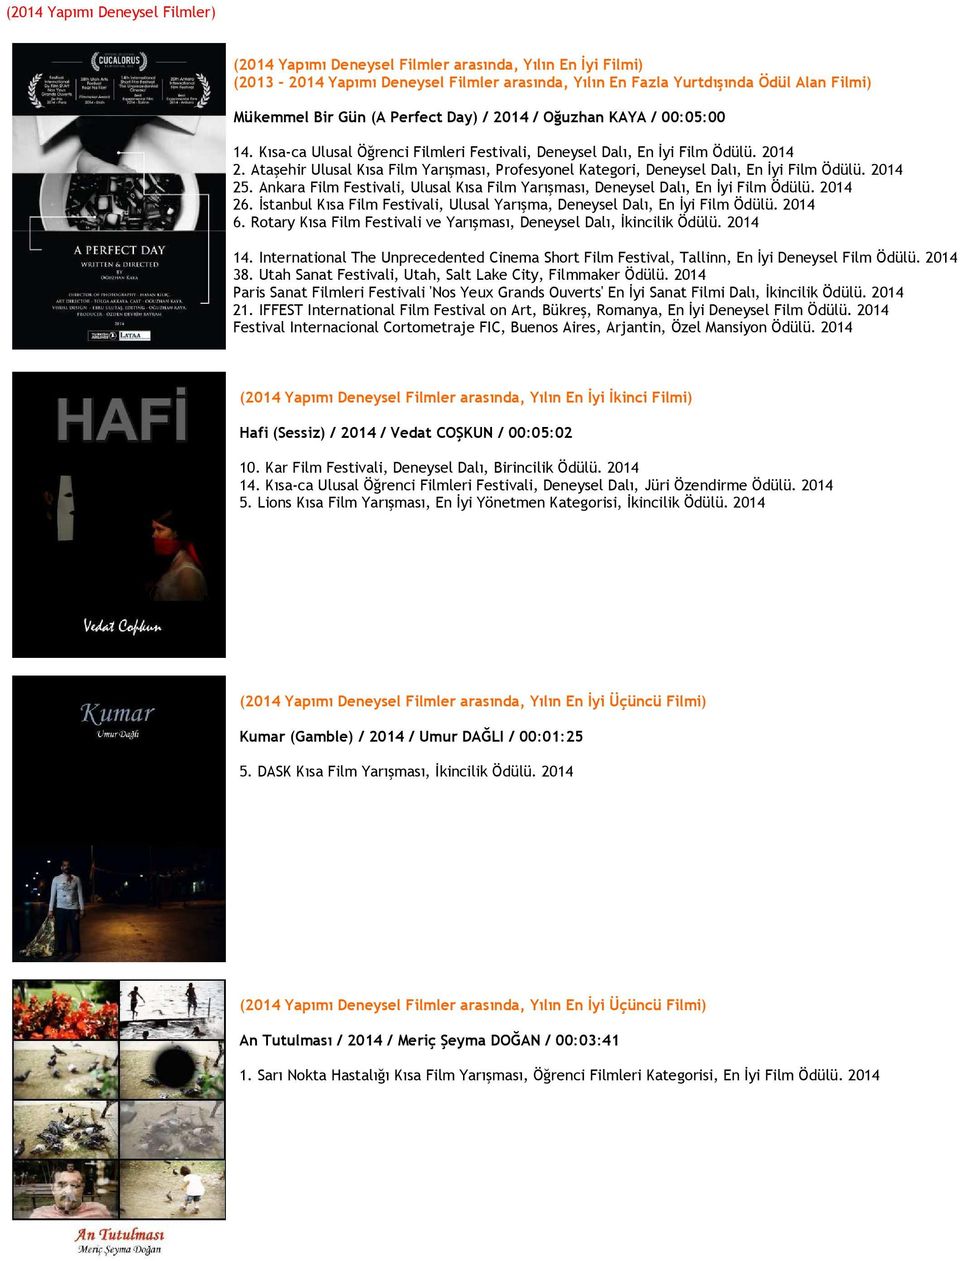 Ataşehir Ulusal Kısa Film Yarışması, Profesyonel Kategori, Deneysel Dalı, En İyi Film Ödülü. 2014 25. Ankara Film Festivali, Ulusal Kısa Film Yarışması, Deneysel Dalı, En İyi Film Ödülü. 2014 26.